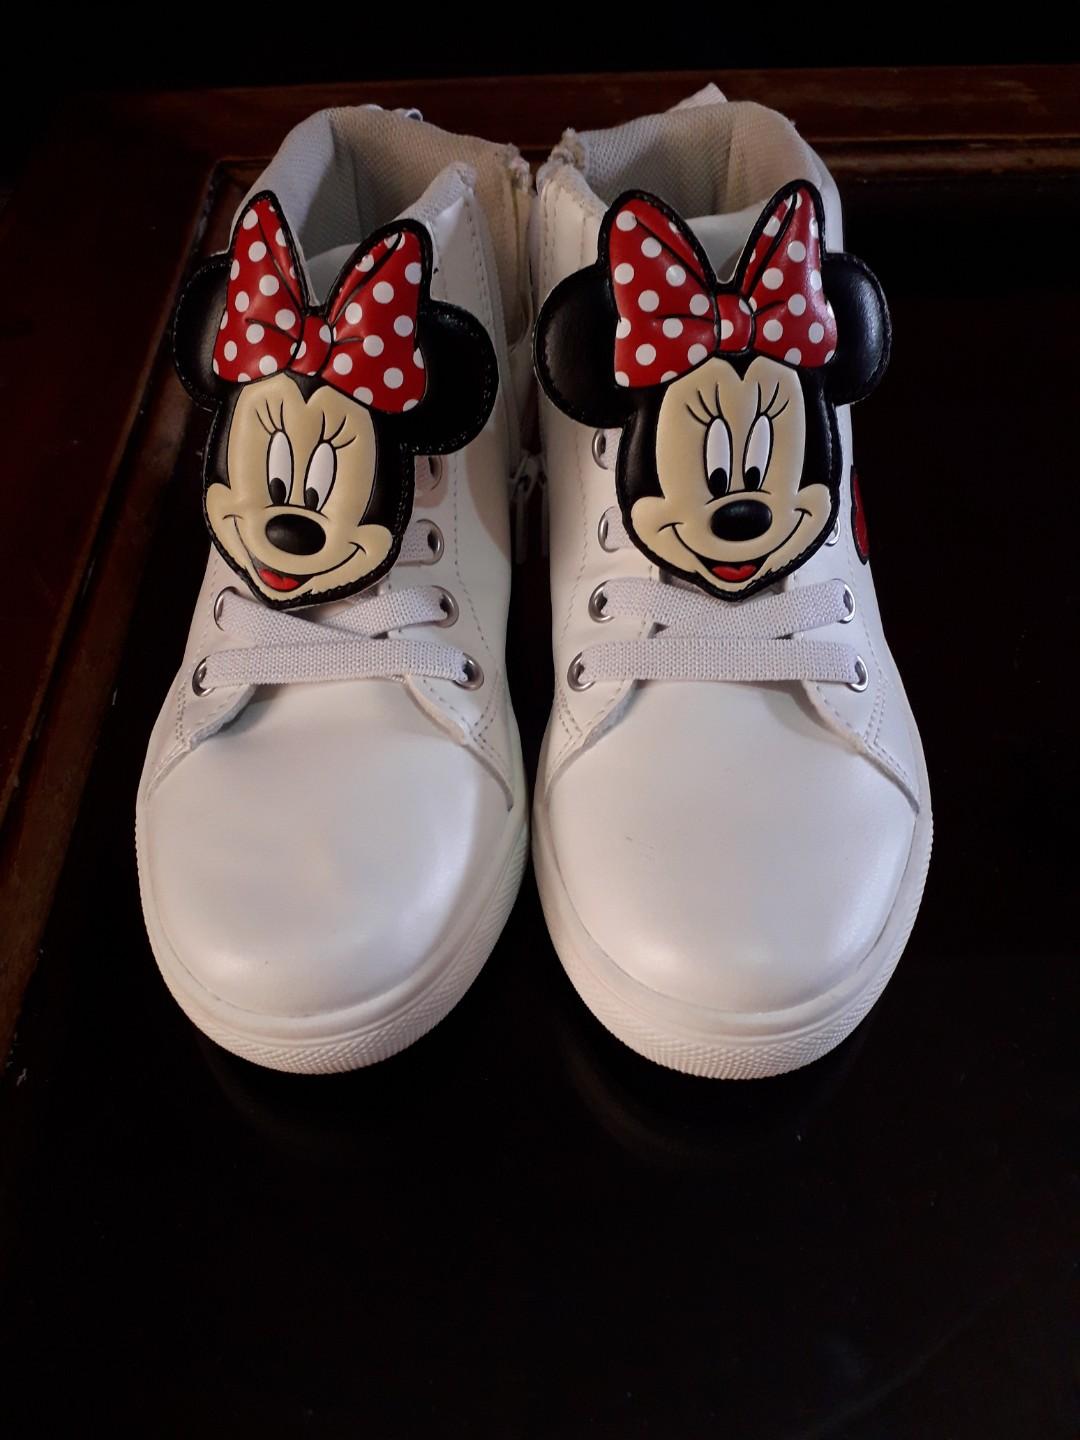 H\u0026M Mickey Mouse Shoes, Babies \u0026 Kids 